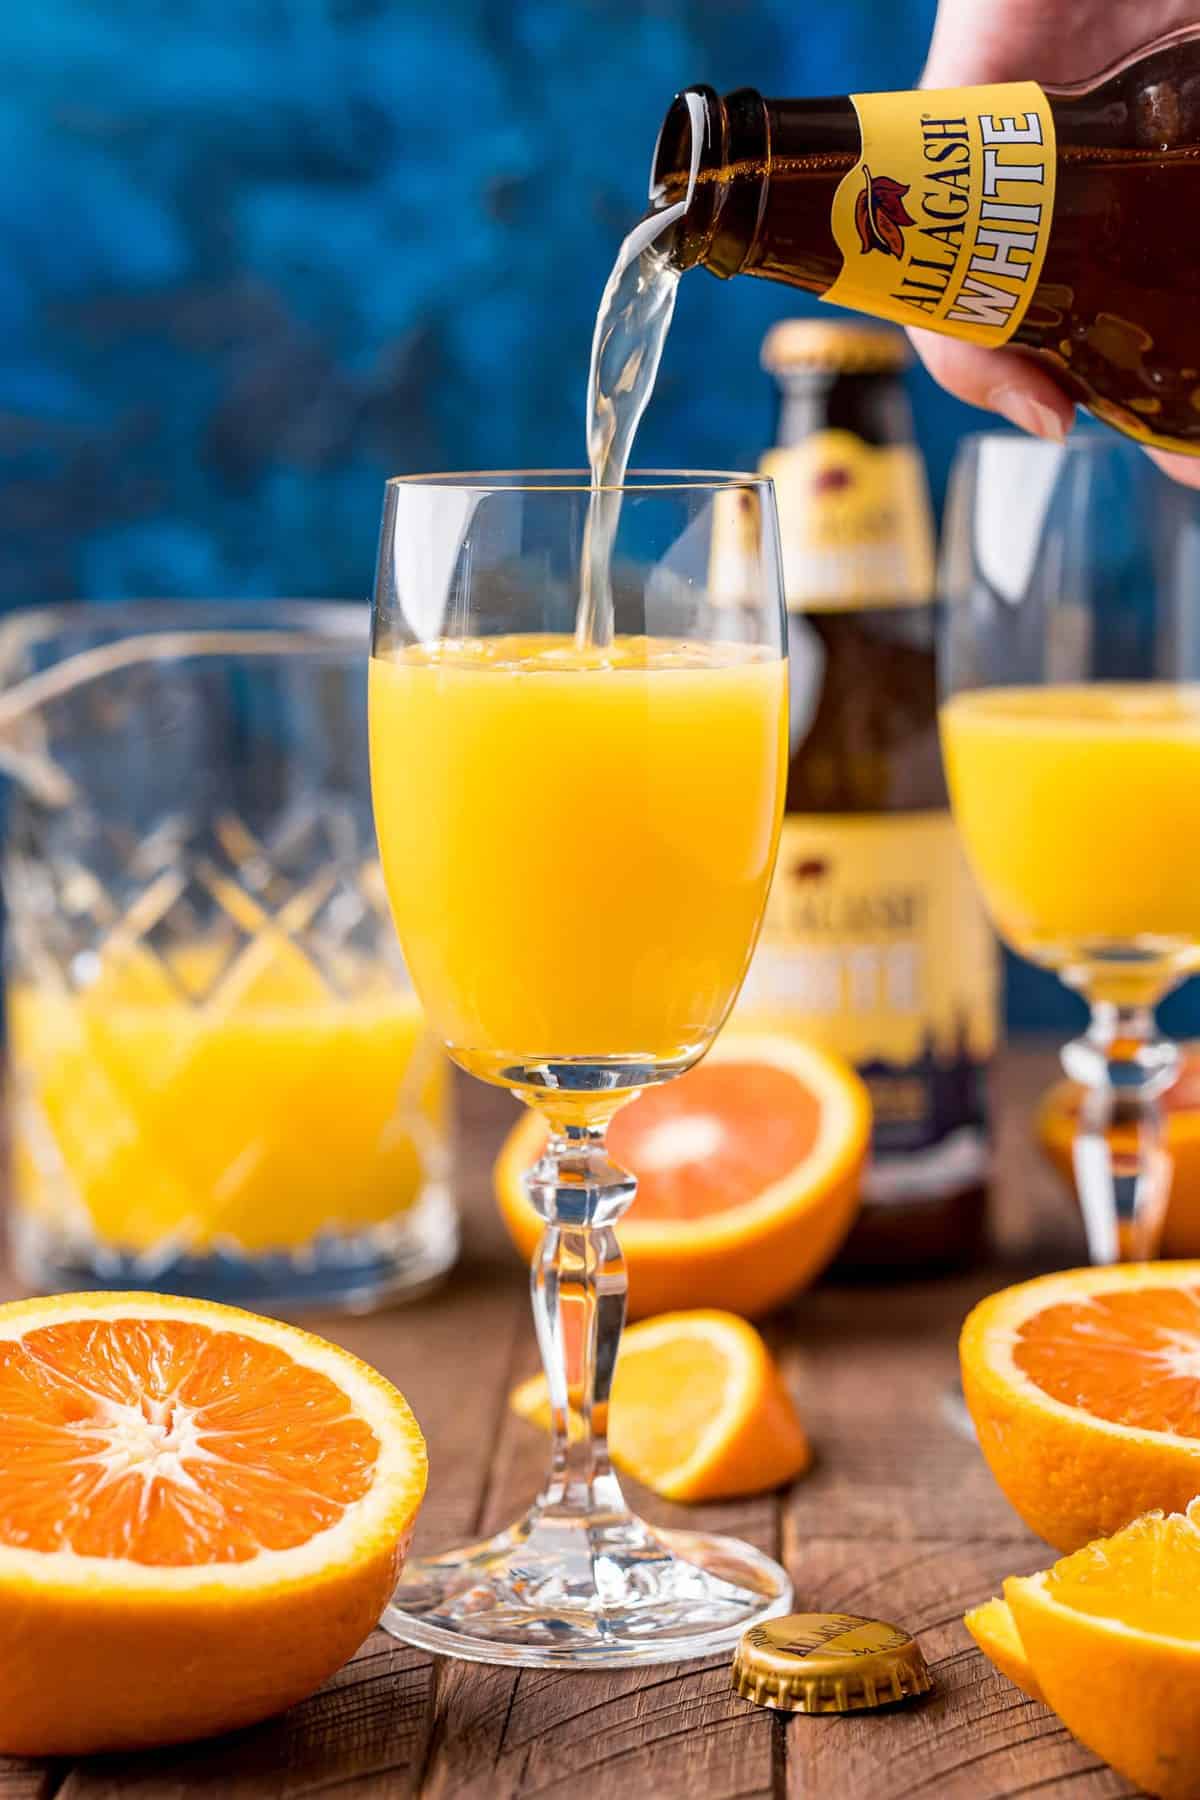 Beer being poured into orange juice.